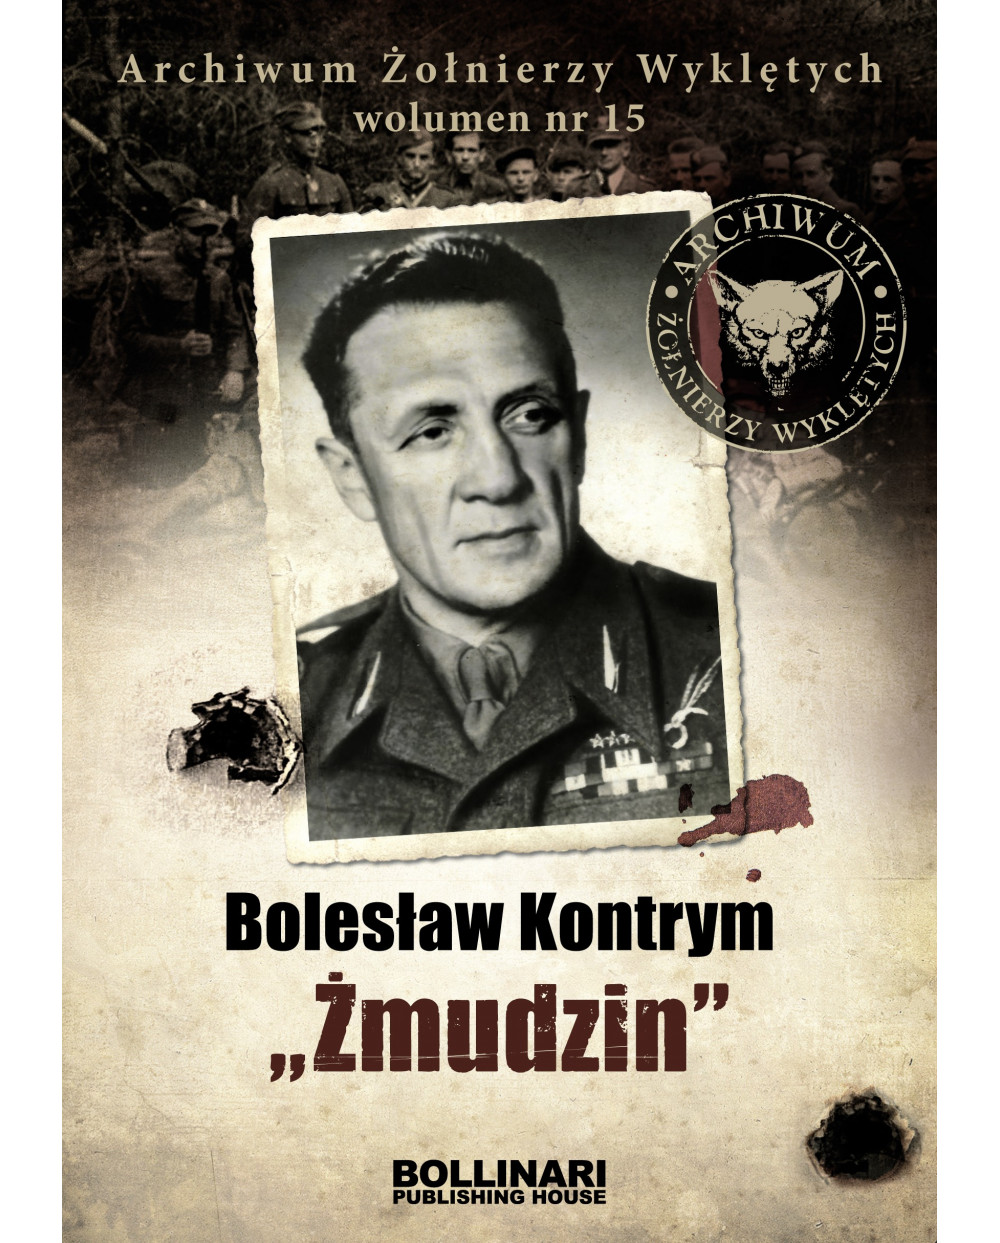 Dominik Kucinski - Bolesław Kontrym "Żmudzin" - Archiwum Żołnierzy Wyklętych, wolumen nr15